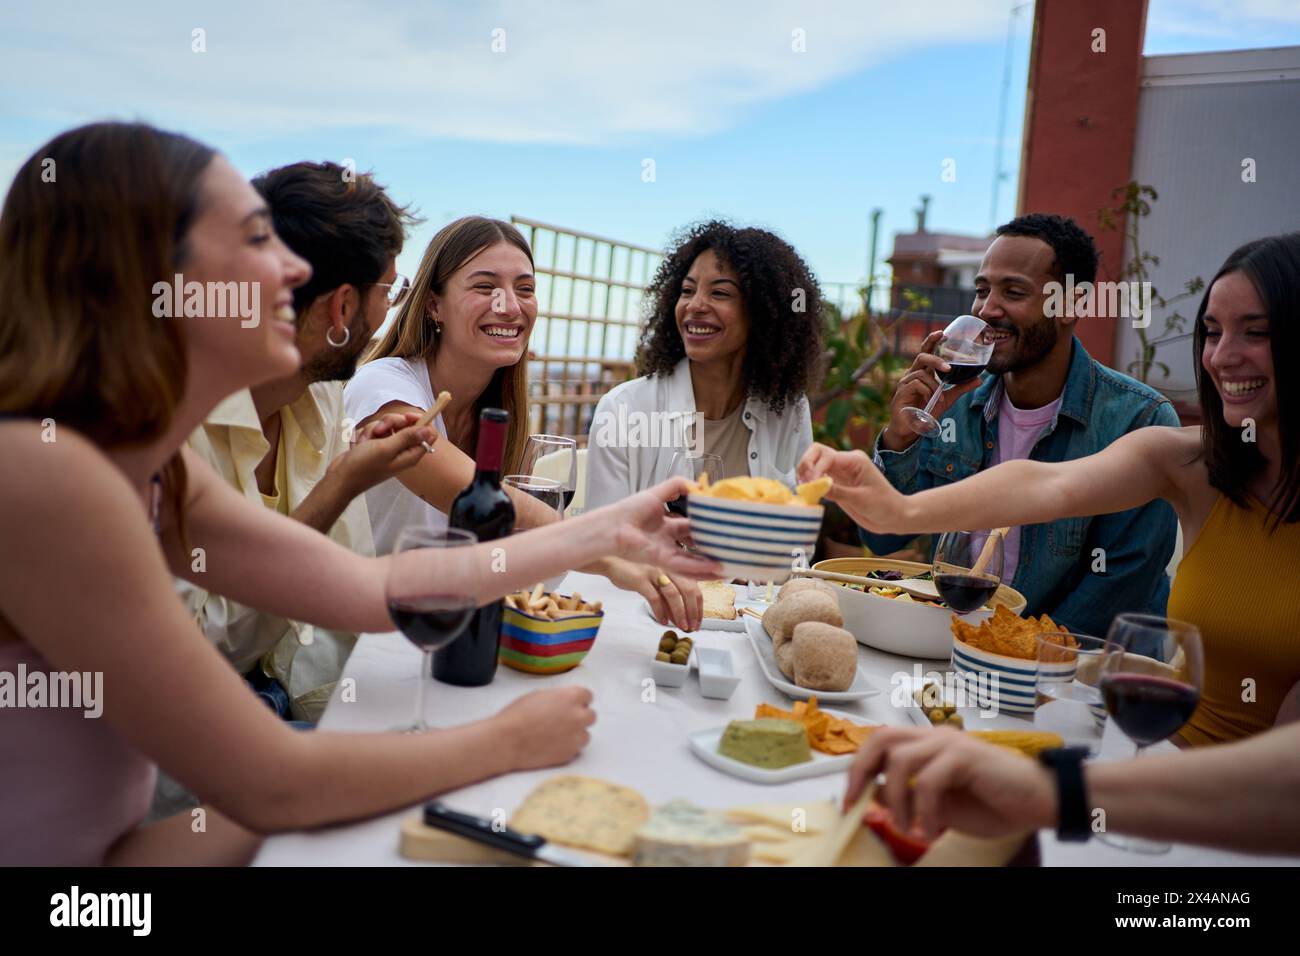 Gruppo di giovani amici multietnici che gusteranno il pasto riuniti sul tetto Foto Stock